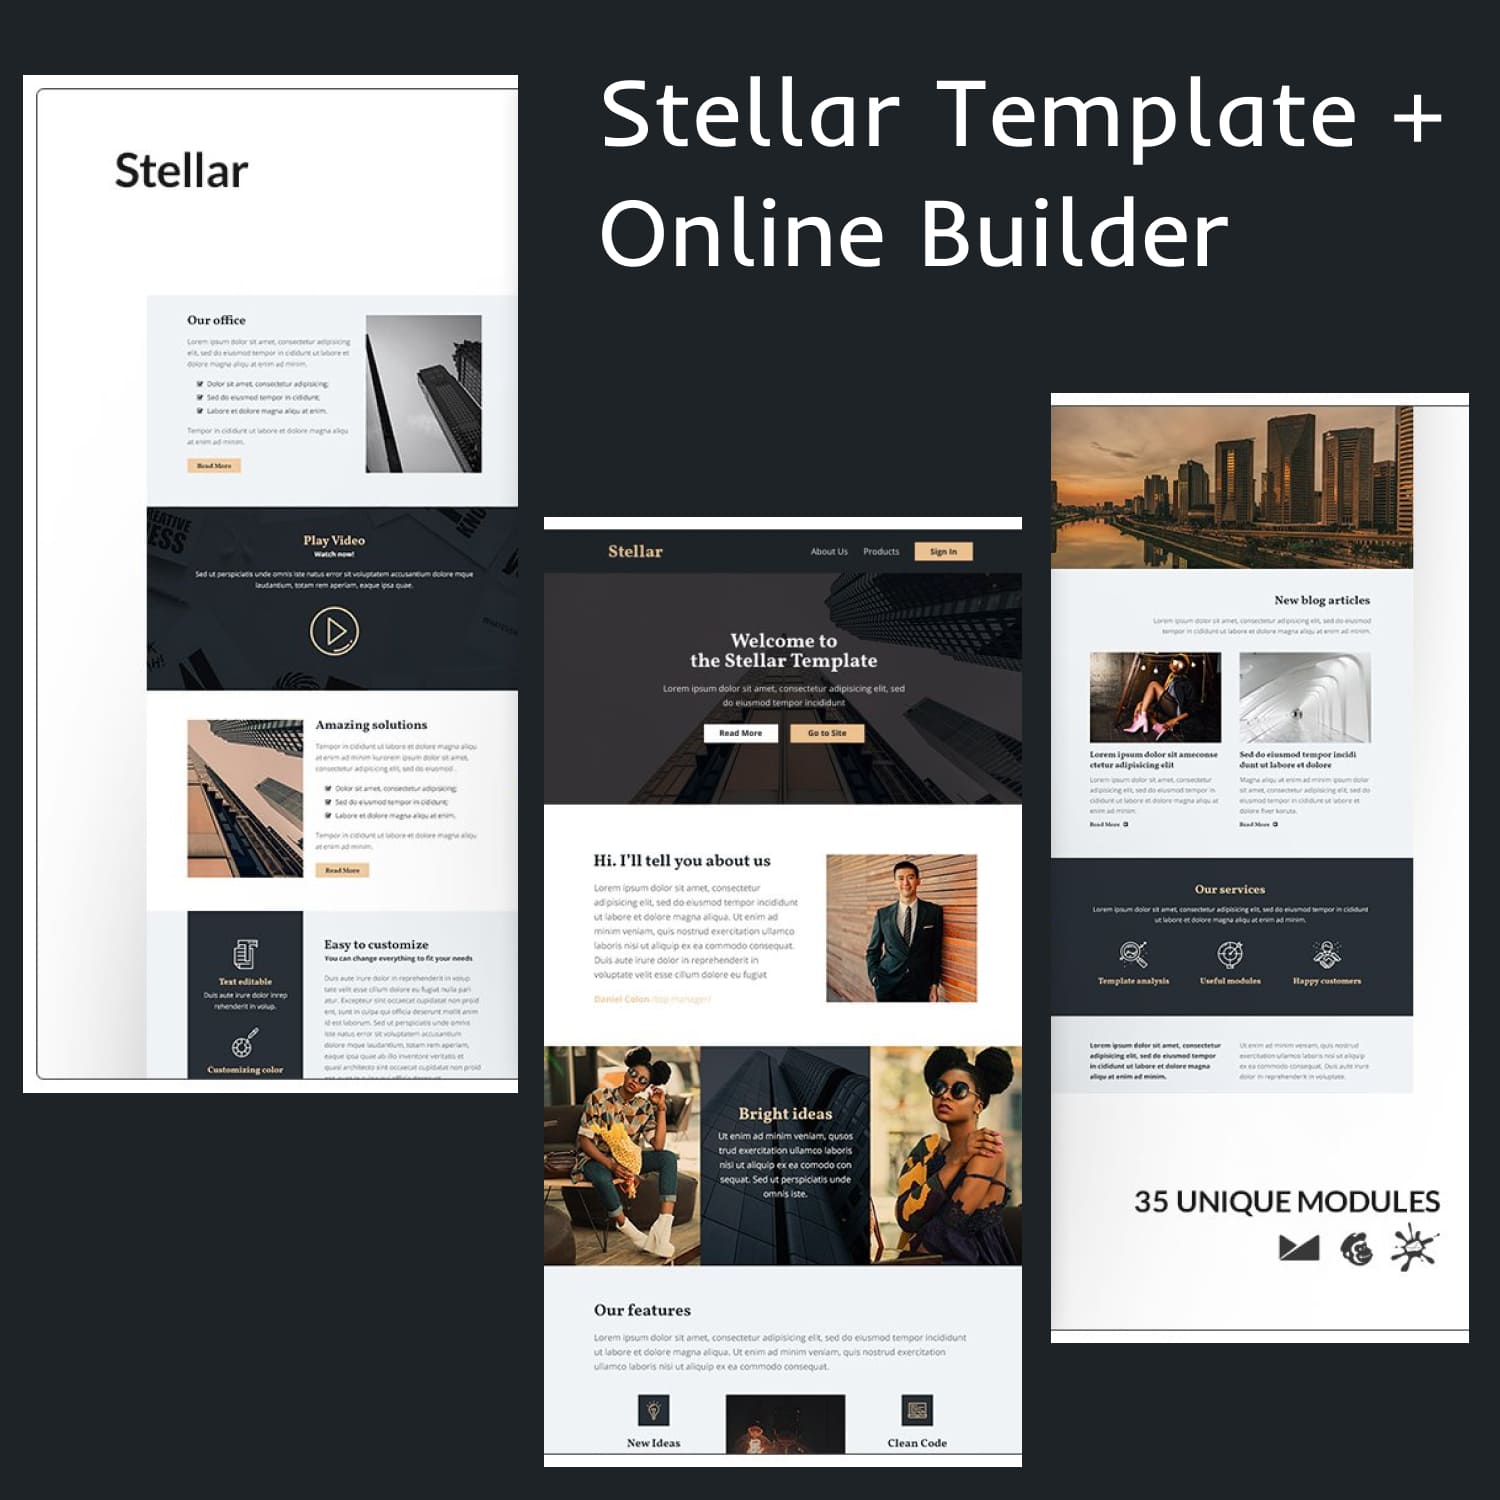 Stellar Template + Online Builder.